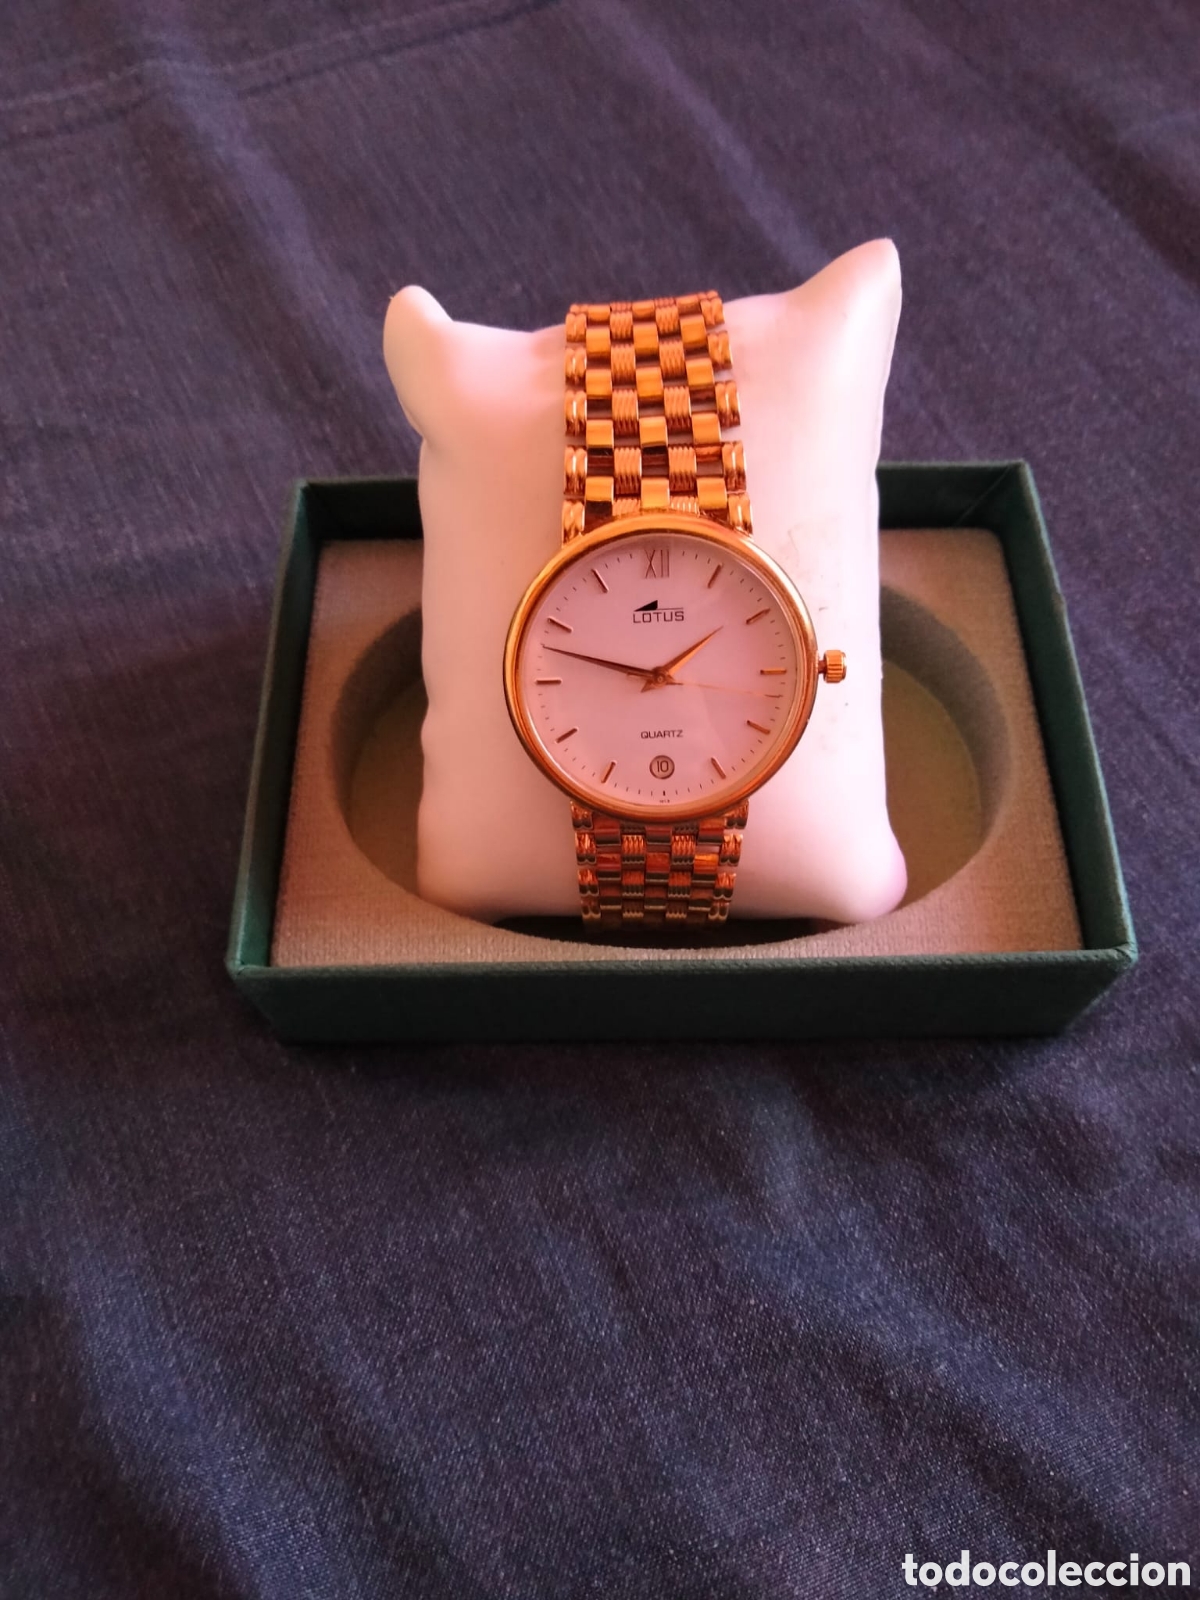 magnífico reloj lotus de oro 18k, 750, mujer - Compra venta en todocoleccion